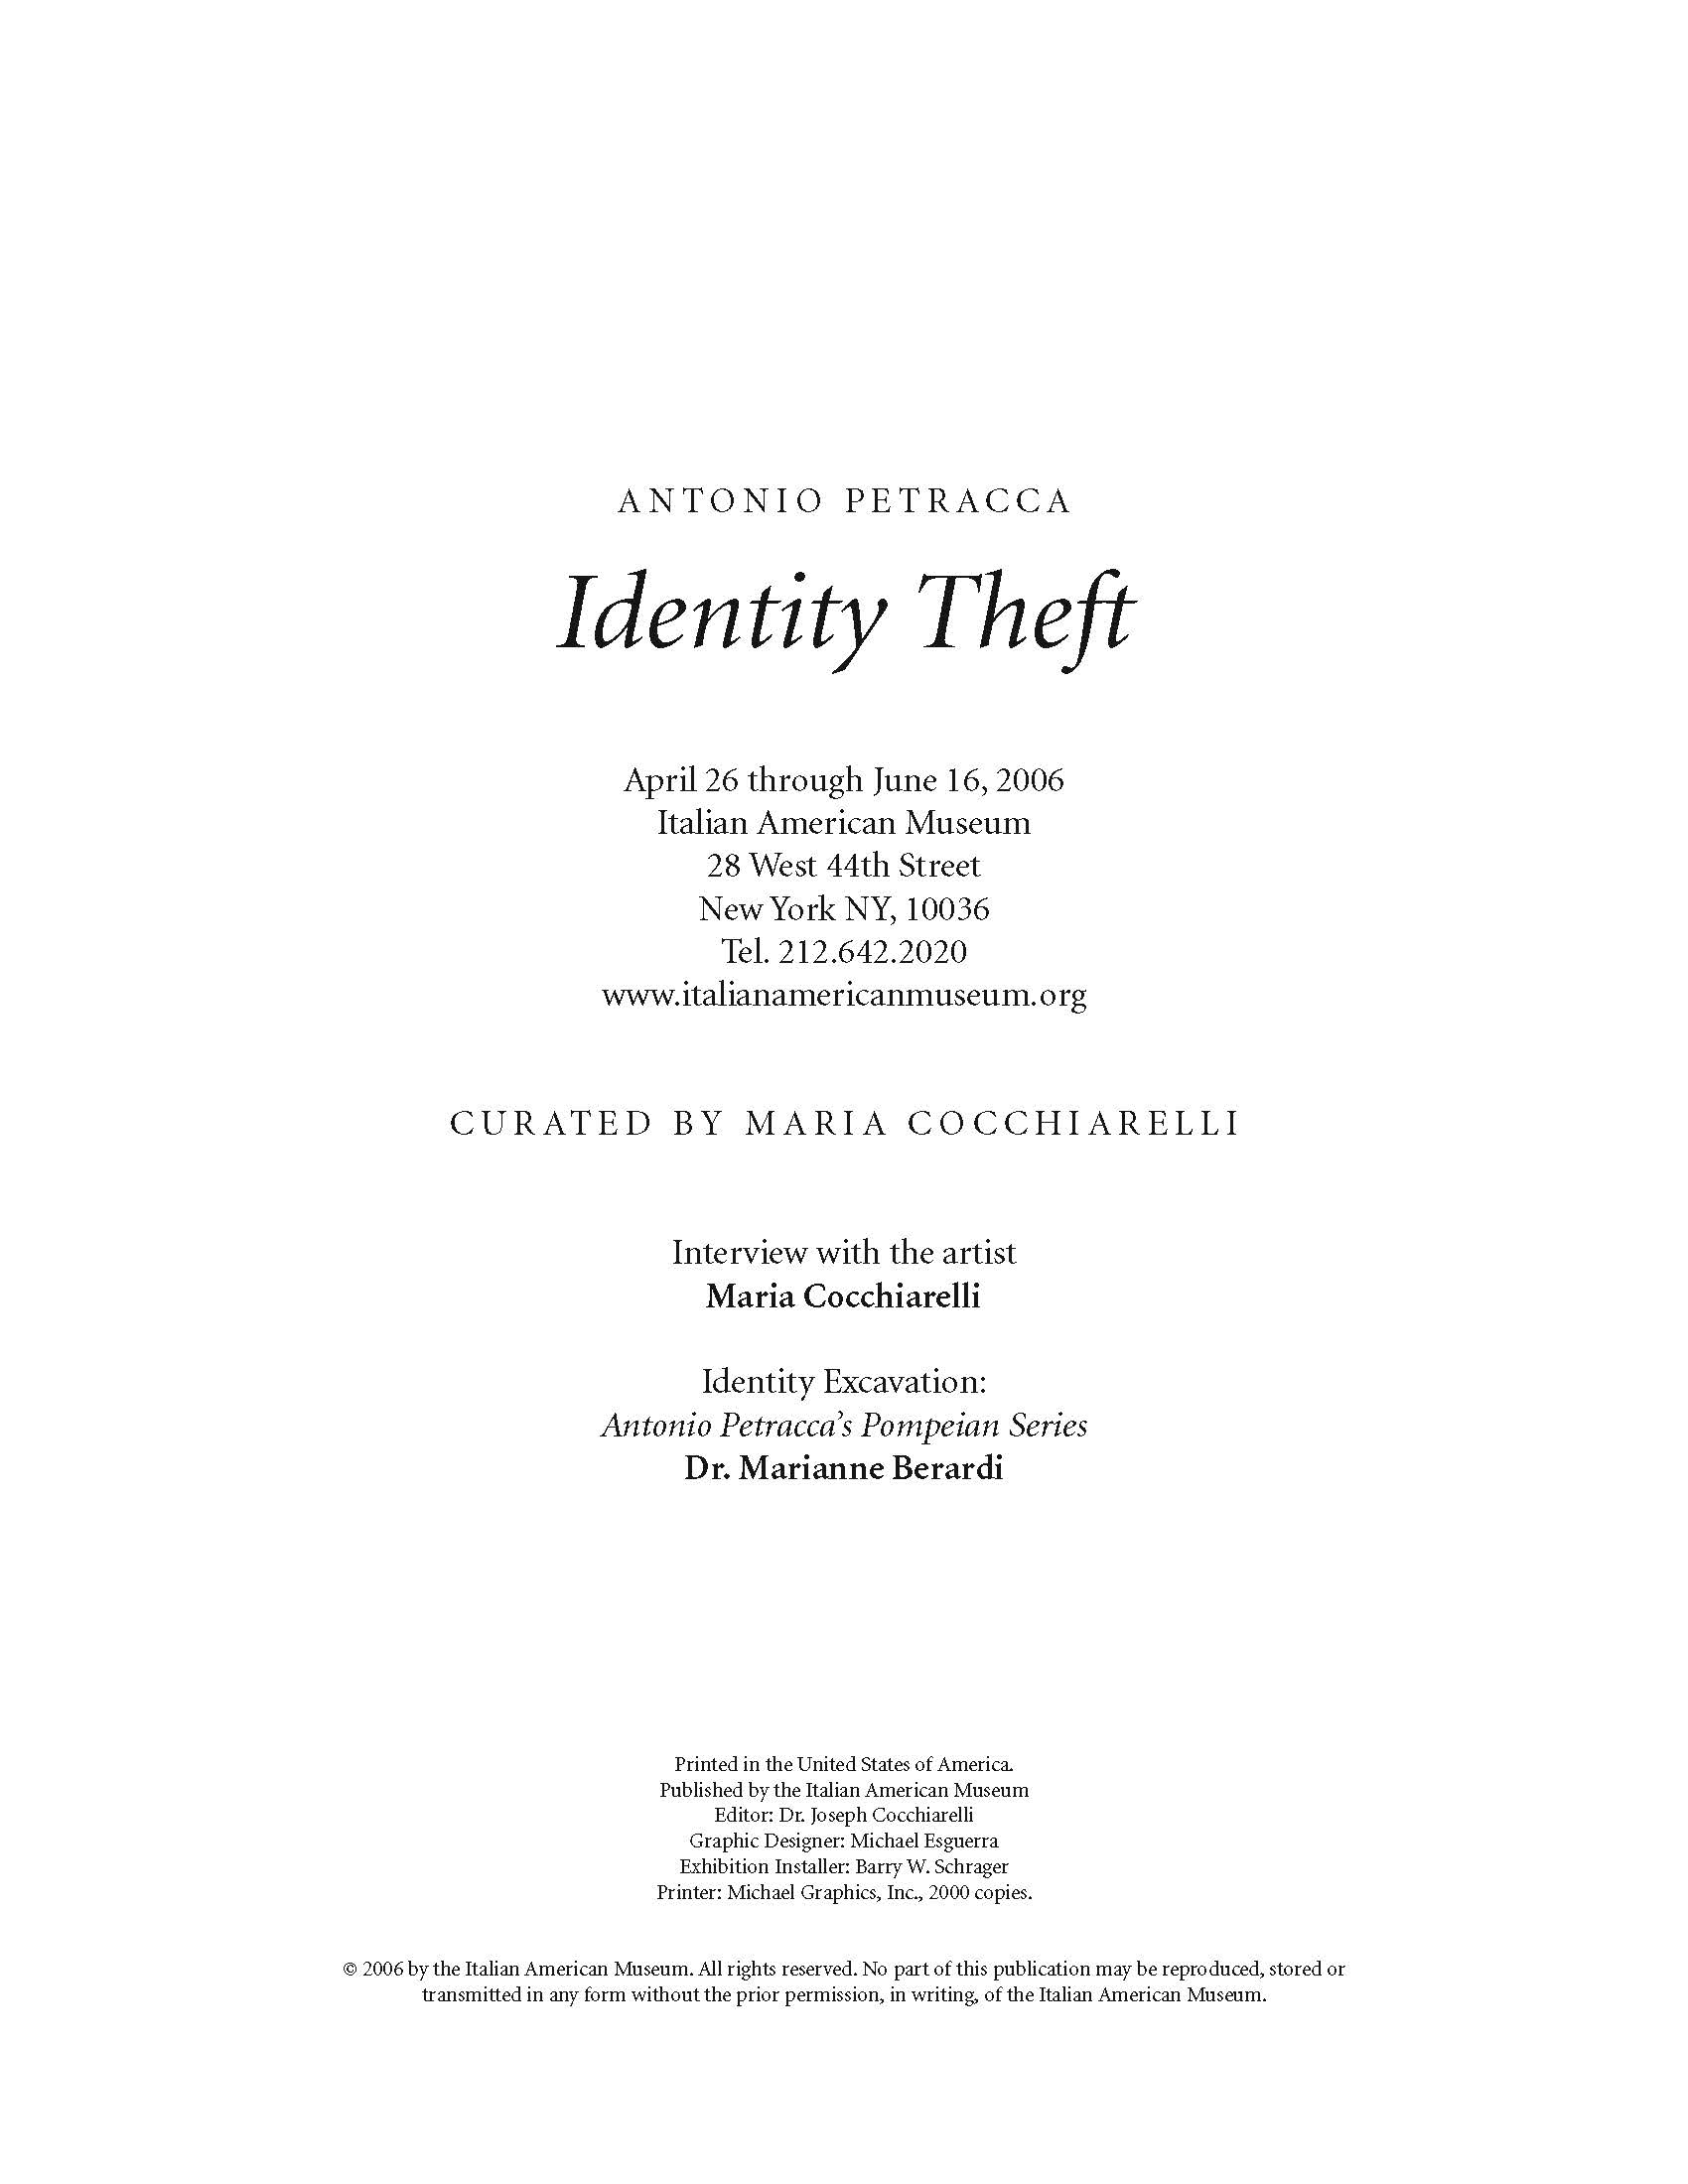 Antonio Petracca, Identity Theft 2006